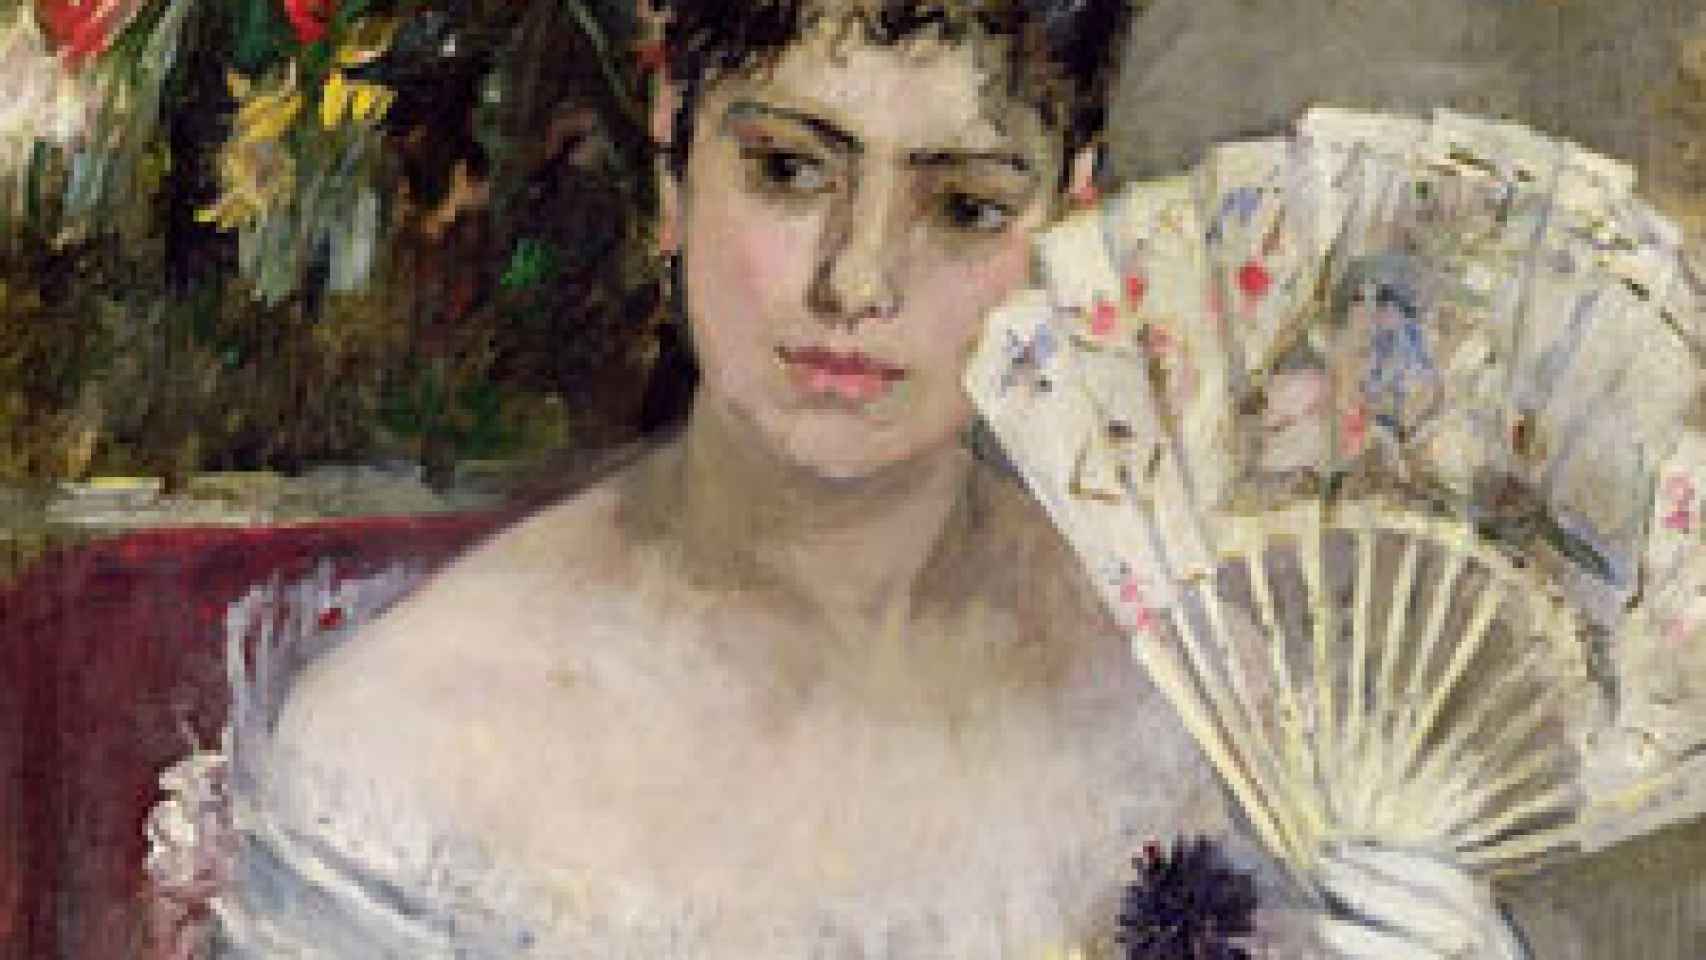 Image: Berthe Morisot es mucho más que una simple discípula de Manet